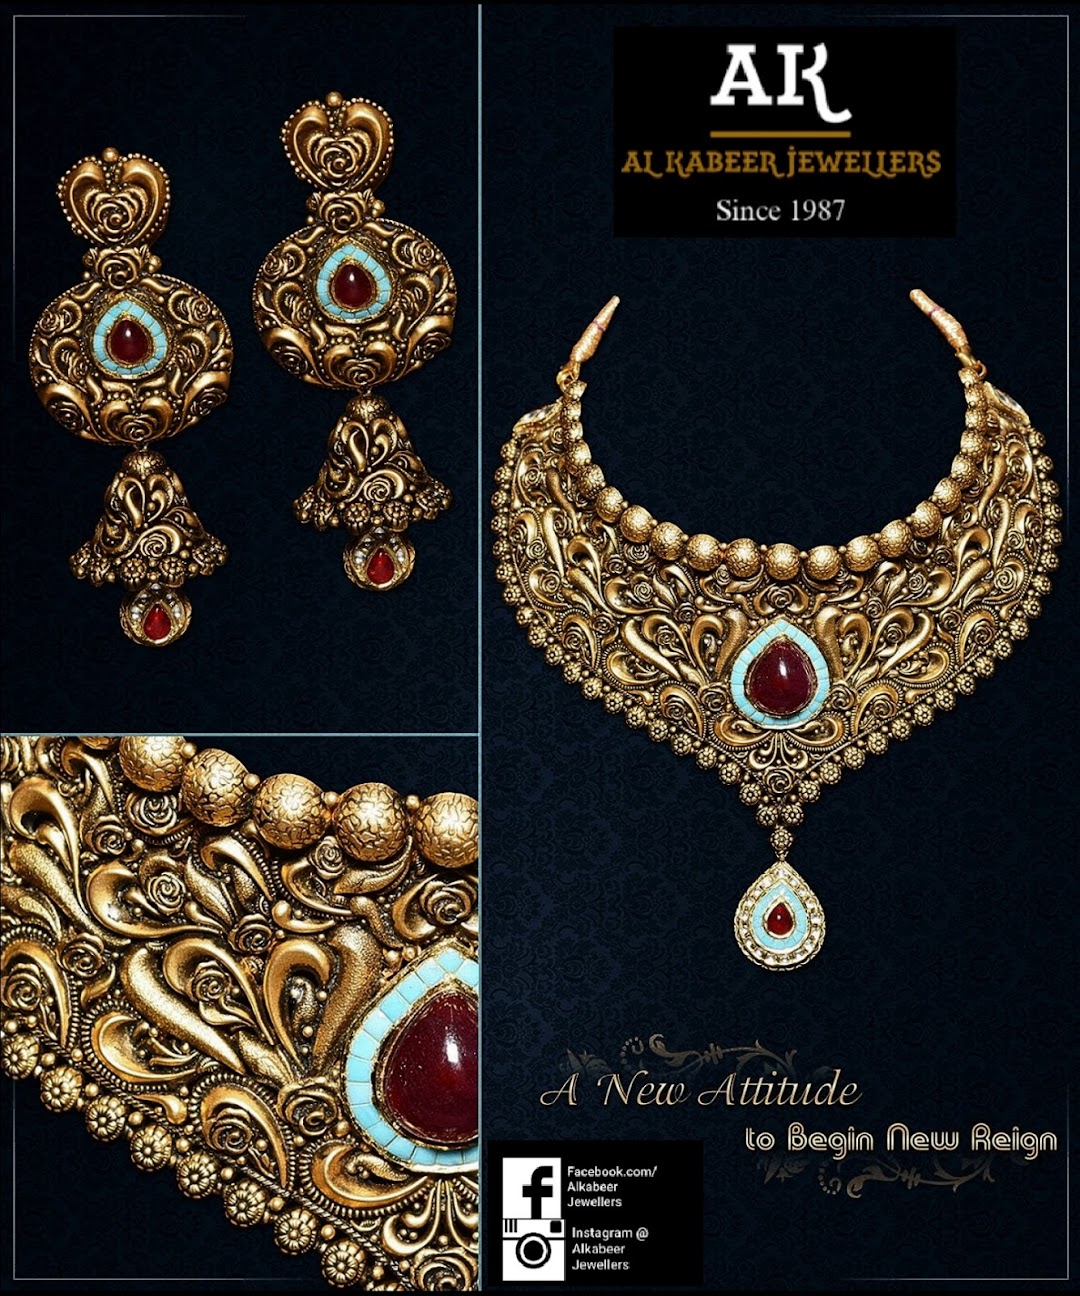 Al-Kabeer Jewellers